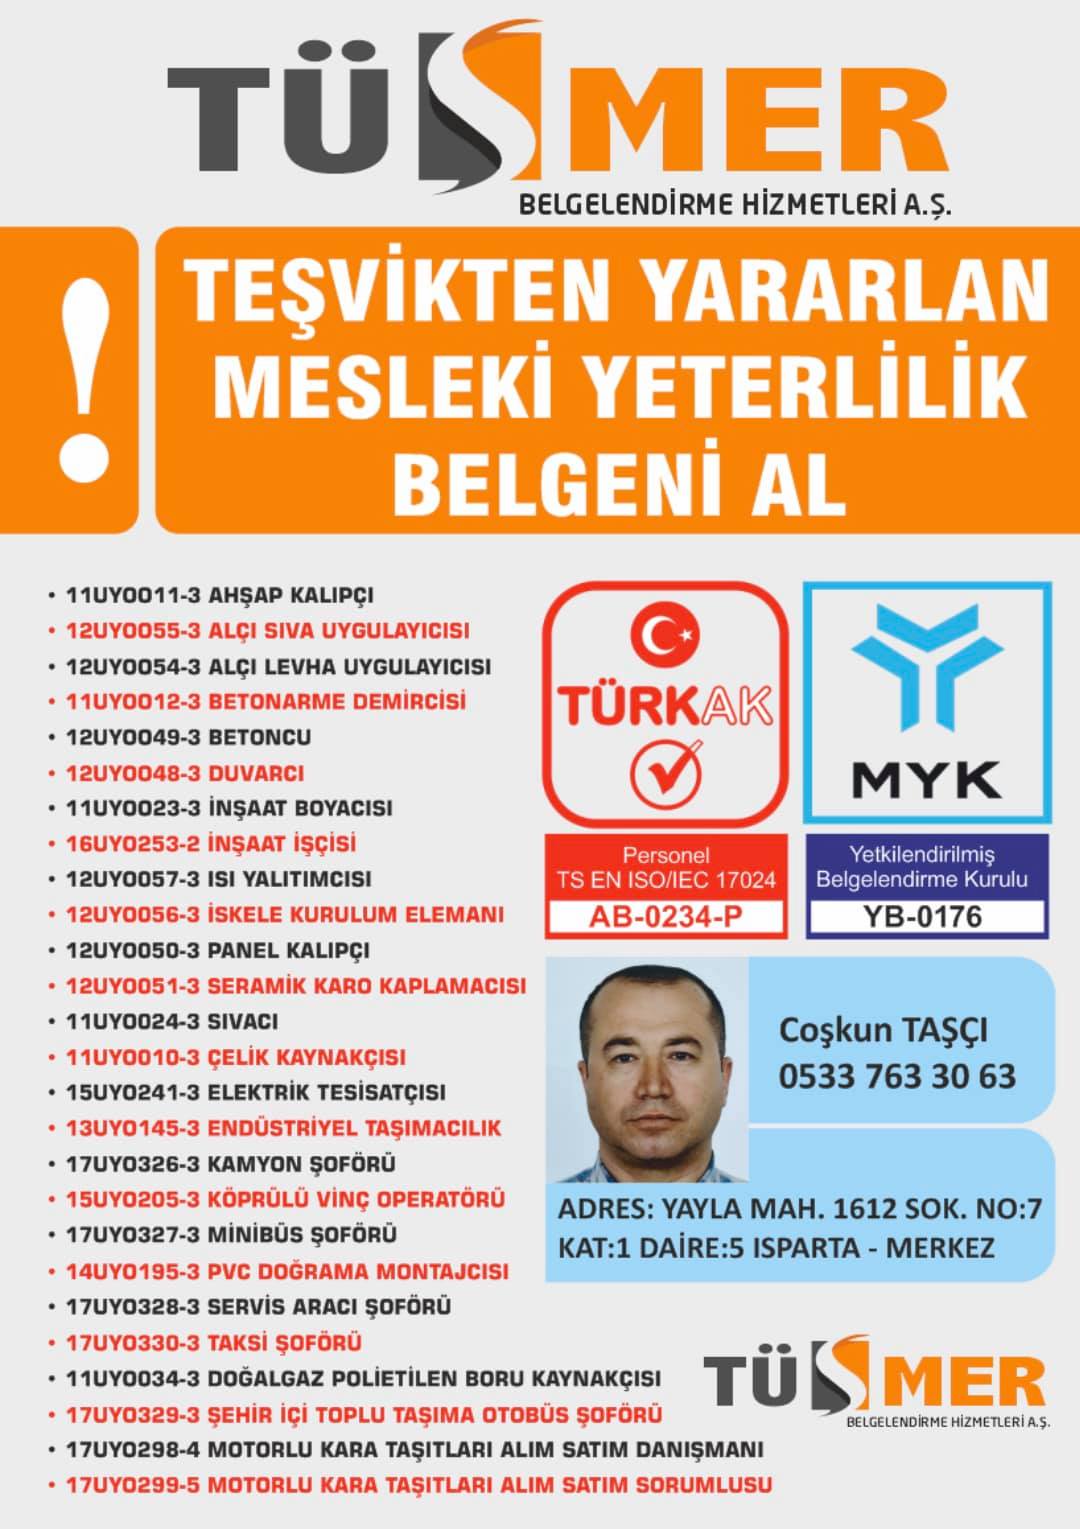 MYK MESLEKİ YETERLİLİK BELGESİ AtatürkAtaşehir İstanbul